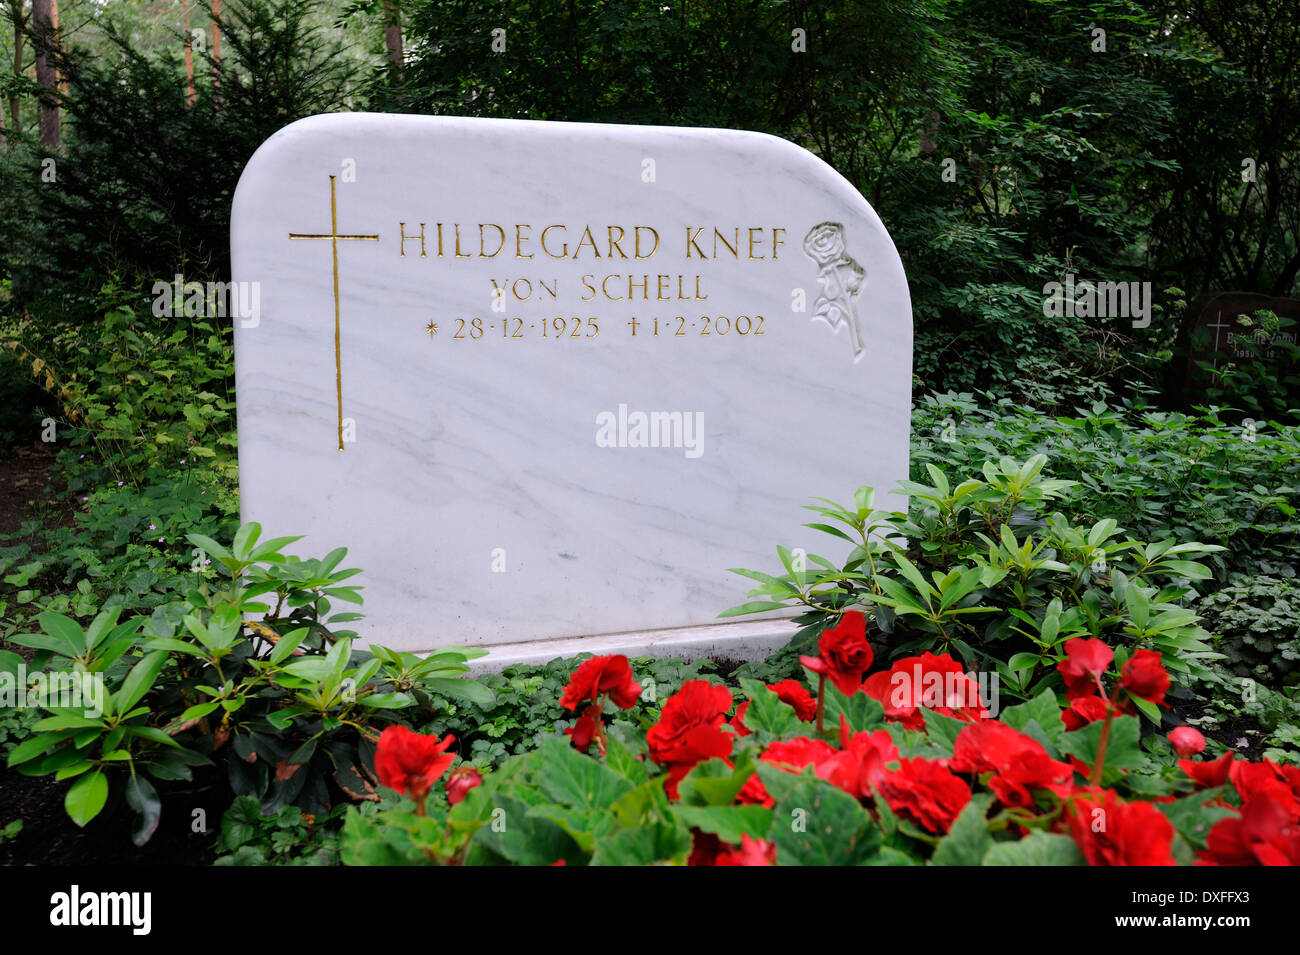 Memorial grave of Hildegard Knef, Waldfriedhof Zehlendorf, Berlin, Germany Stock Photo